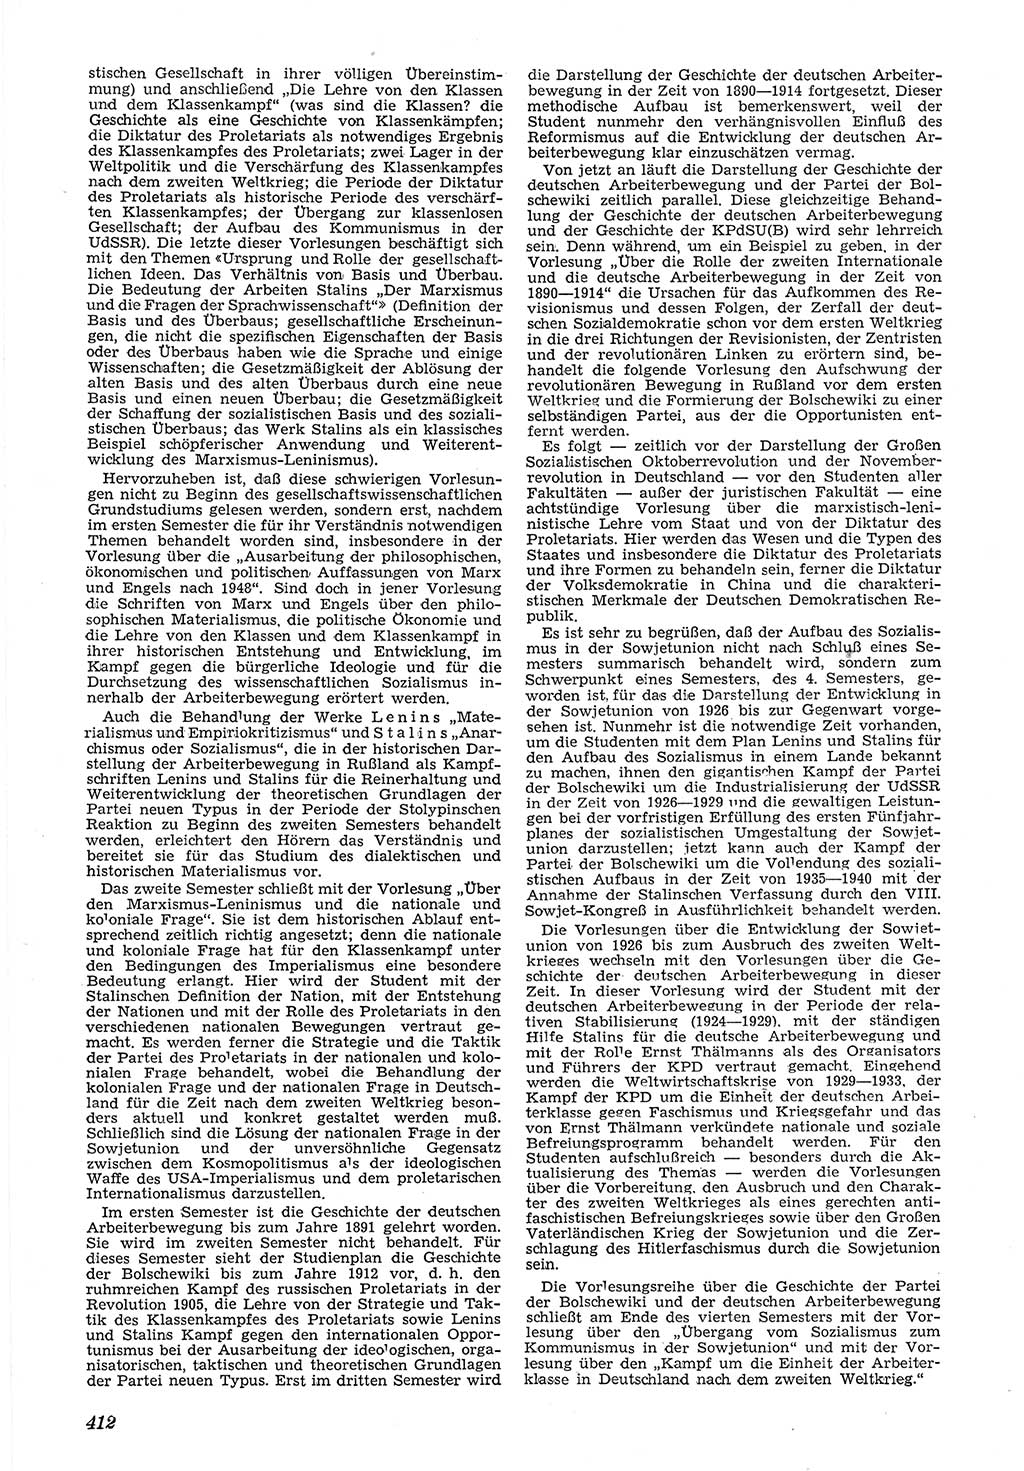 Neue Justiz (NJ), Zeitschrift für Recht und Rechtswissenschaft [Deutsche Demokratische Republik (DDR)], 5. Jahrgang 1951, Seite 412 (NJ DDR 1951, S. 412)